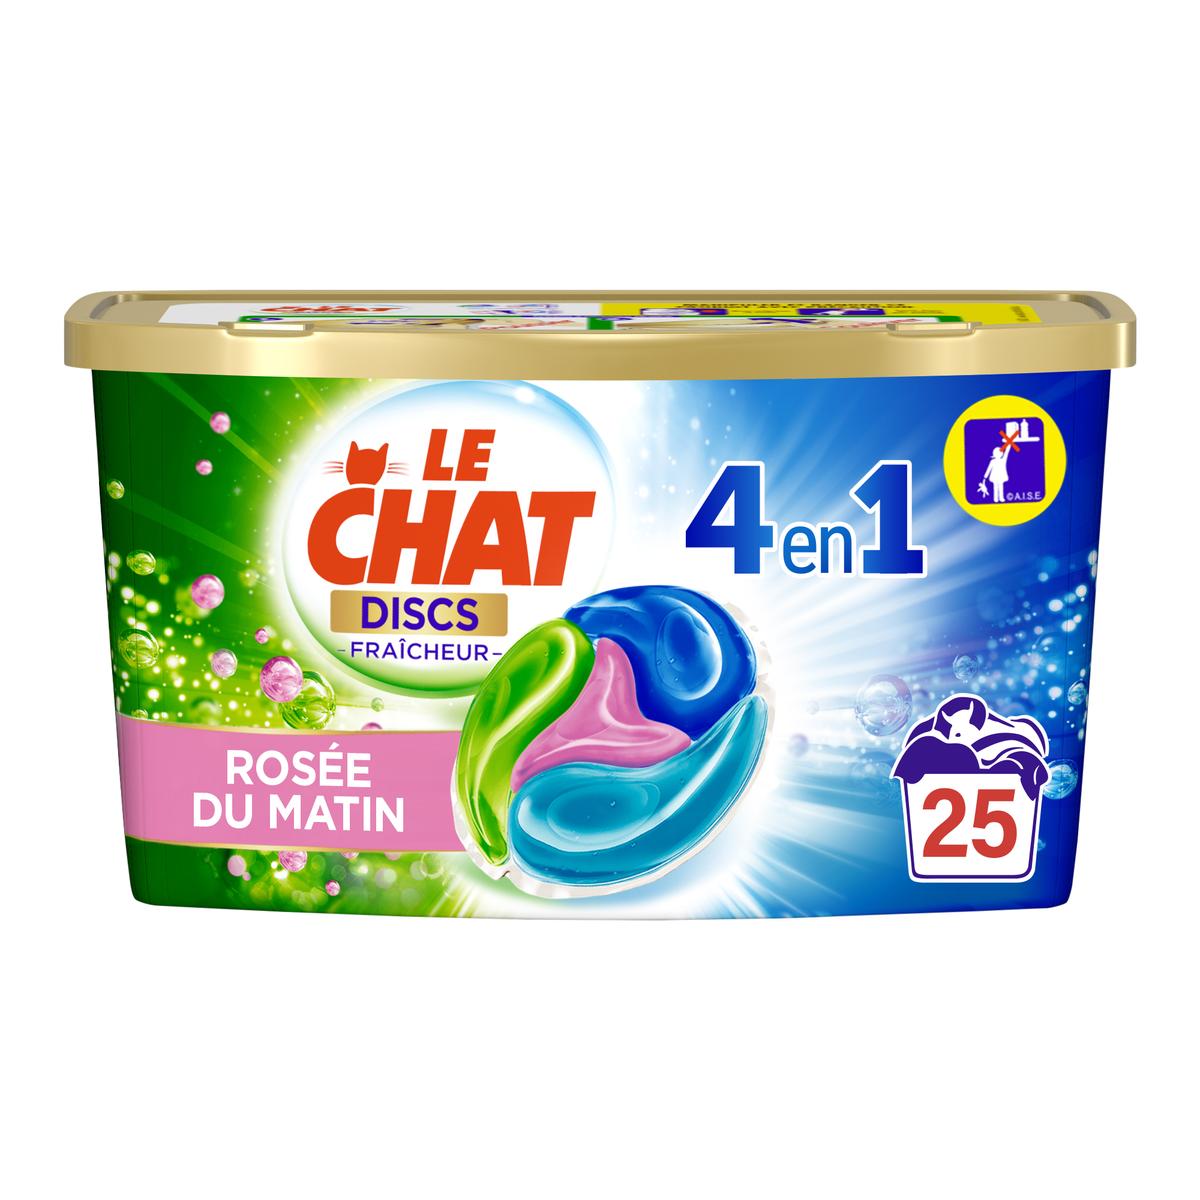 Promo Lessive Capsule Le Chat Discs 4 En 1 1 Acheté = 1 Offert